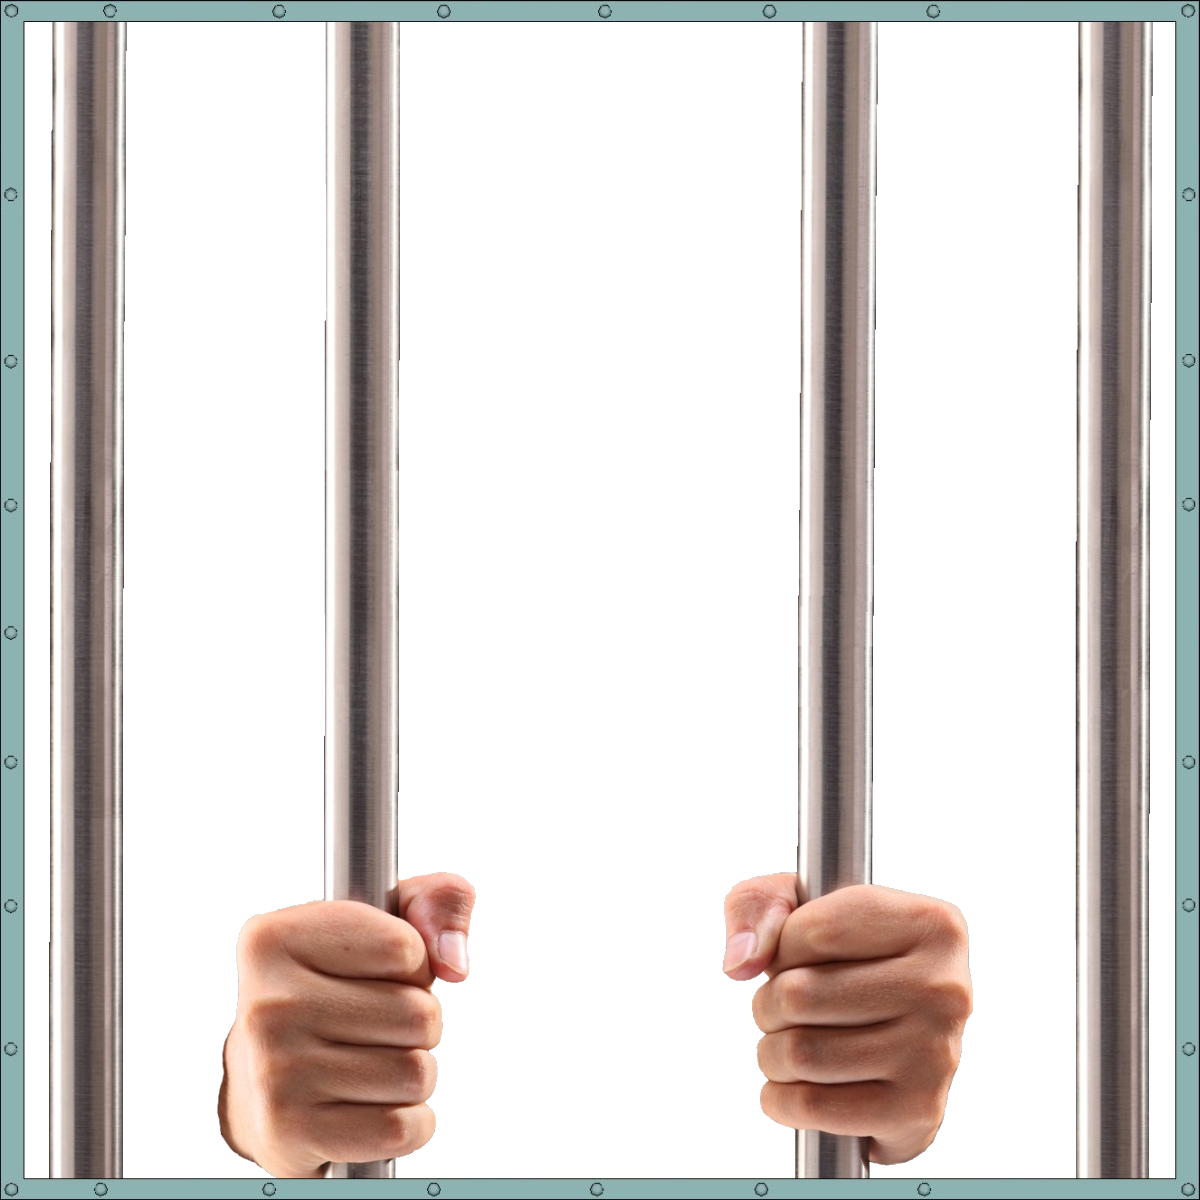 Jail PNG image free Download 